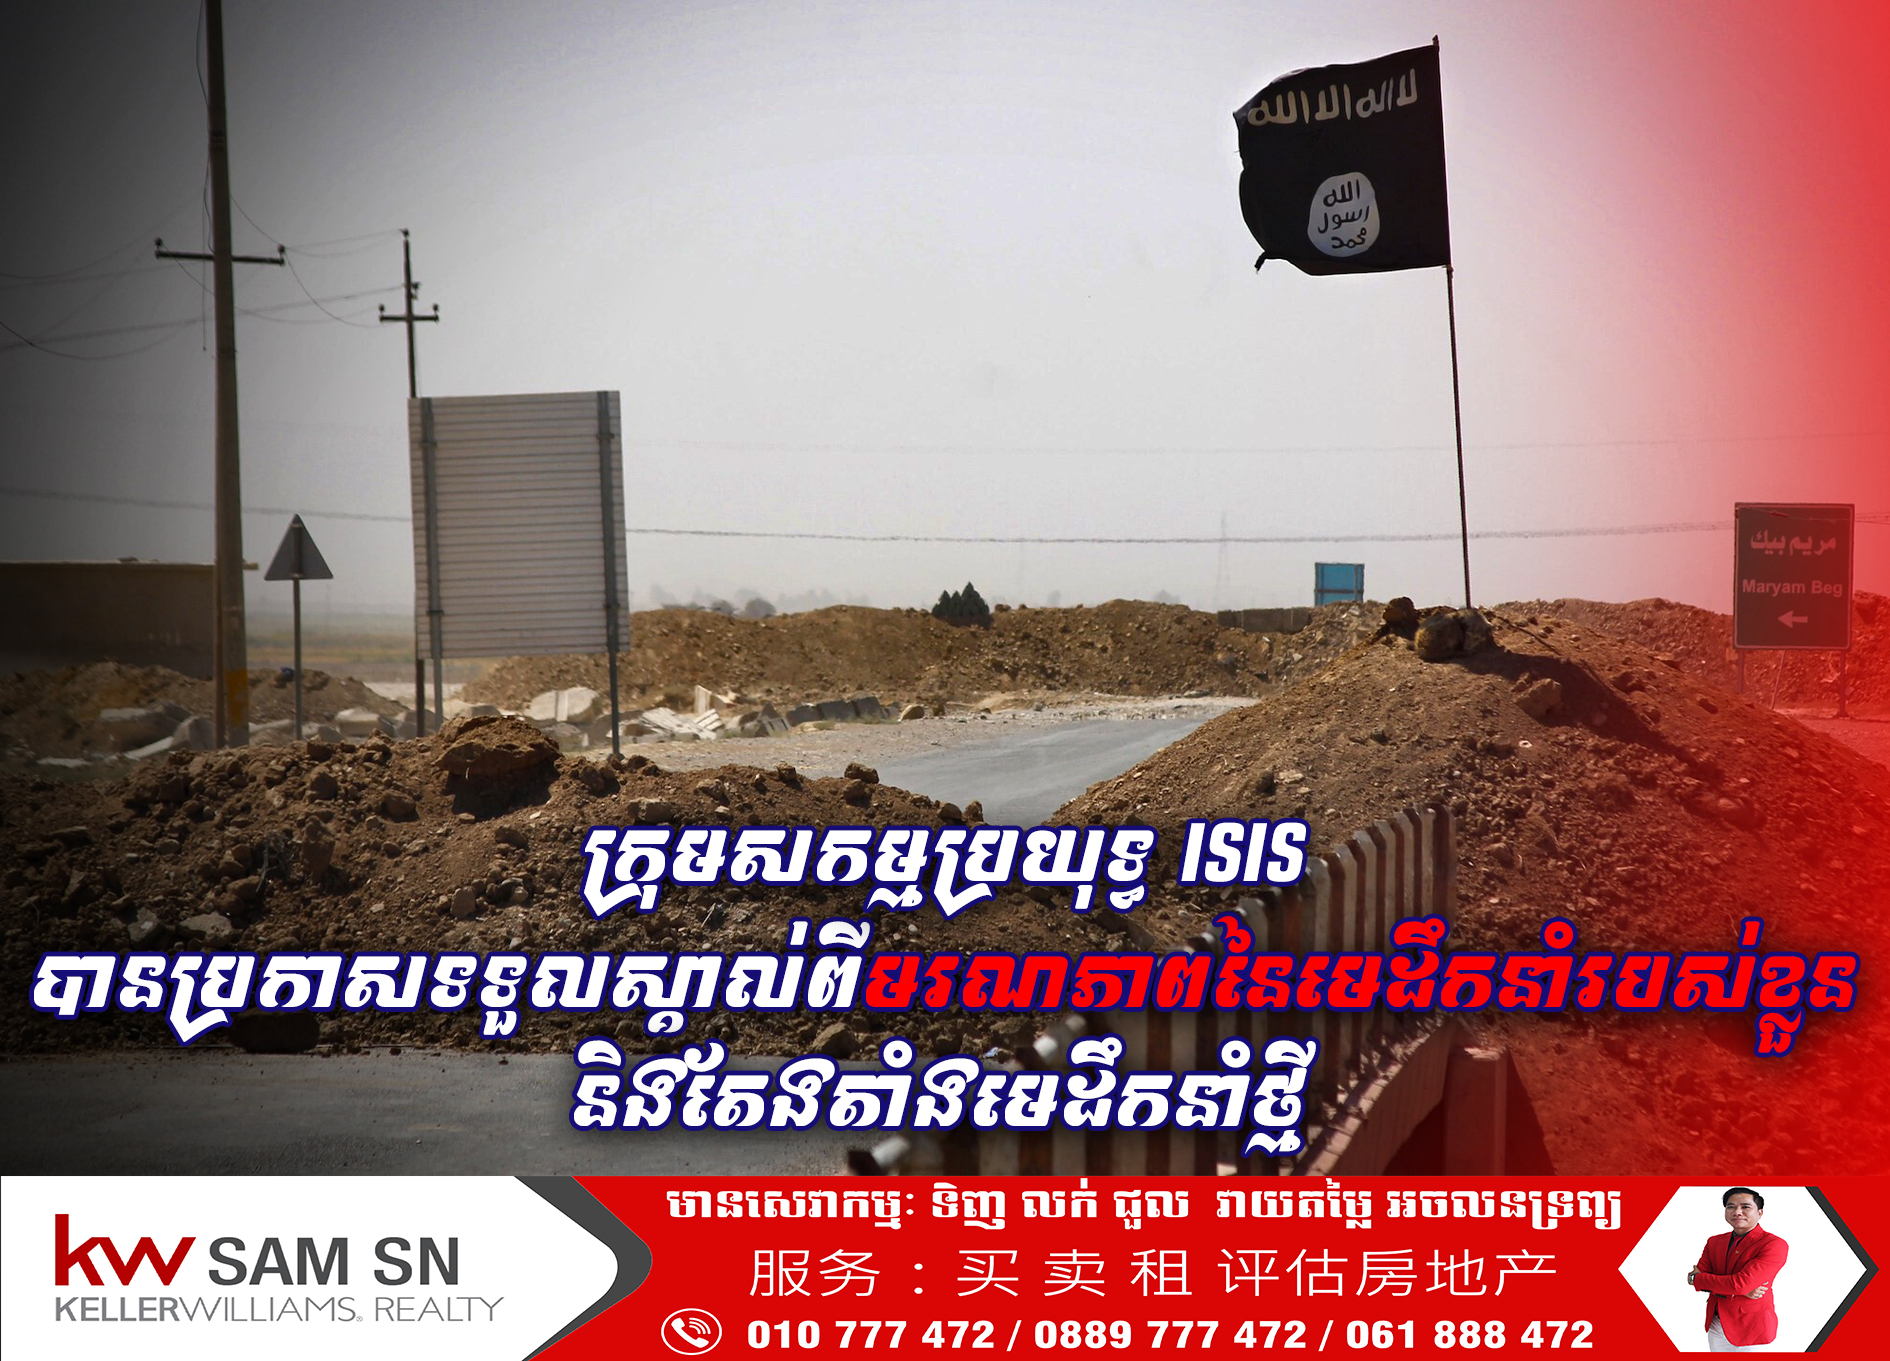 ក្រុមសកម្មប្រយុទ្ធ ISIS បានប្រកាសទទួលស្គាល់ពីមរណភាពនៃមេដឹកនាំរបស់ខ្លួន និងតែងតាំងមេដឹកនាំថ្មី